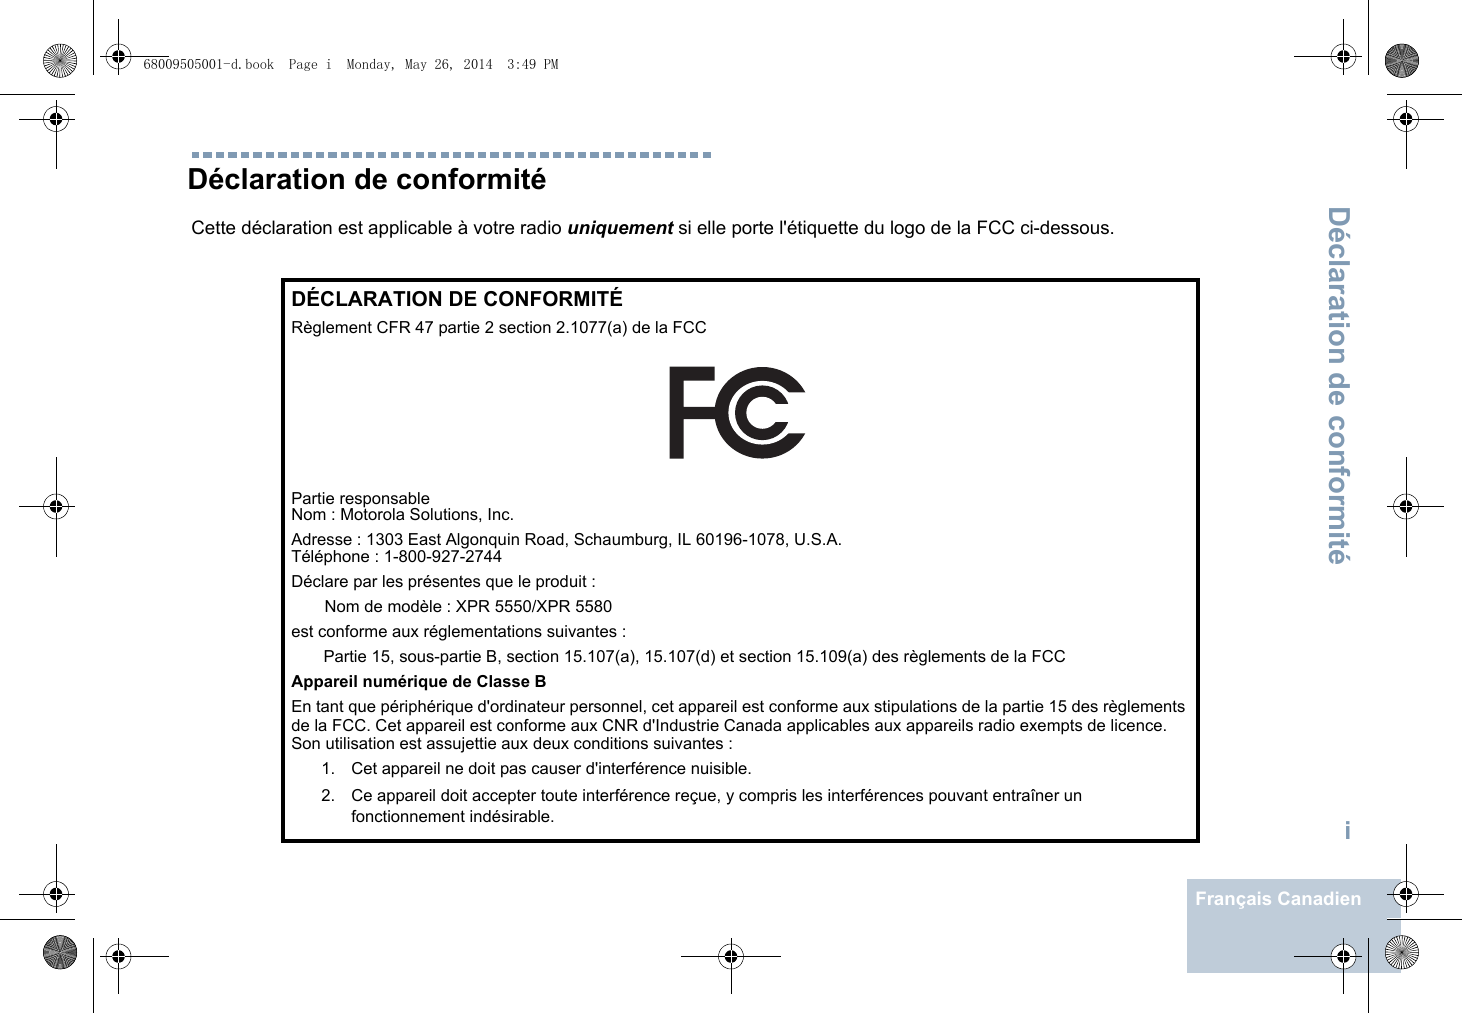 Déclaration de conformitéiFrançais CanadienDéclaration de conformitéCette déclaration est applicable à votre radio uniquement si elle porte l&apos;étiquette du logo de la FCC ci-dessous.DÉCLARATION DE CONFORMITÉRèglement CFR 47 partie 2 section 2.1077(a) de la FCCPartie responsable Nom : Motorola Solutions, Inc.Adresse : 1303 East Algonquin Road, Schaumburg, IL 60196-1078, U.S.A.Téléphone : 1-800-927-2744Déclare par les présentes que le produit :Nom de modèle : XPR 5550/XPR 5580est conforme aux réglementations suivantes :Partie 15, sous-partie B, section 15.107(a), 15.107(d) et section 15.109(a) des règlements de la FCCAppareil numérique de Classe BEn tant que périphérique d&apos;ordinateur personnel, cet appareil est conforme aux stipulations de la partie 15 des règlements de la FCC. Cet appareil est conforme aux CNR d&apos;Industrie Canada applicables aux appareils radio exempts de licence. Son utilisation est assujettie aux deux conditions suivantes :1. Cet appareil ne doit pas causer d&apos;interférence nuisible. 2. Ce appareil doit accepter toute interférence reçue, y compris les interférences pouvant entraîner un fonctionnement indésirable.68009505001-d.book  Page i  Monday, May 26, 2014  3:49 PM